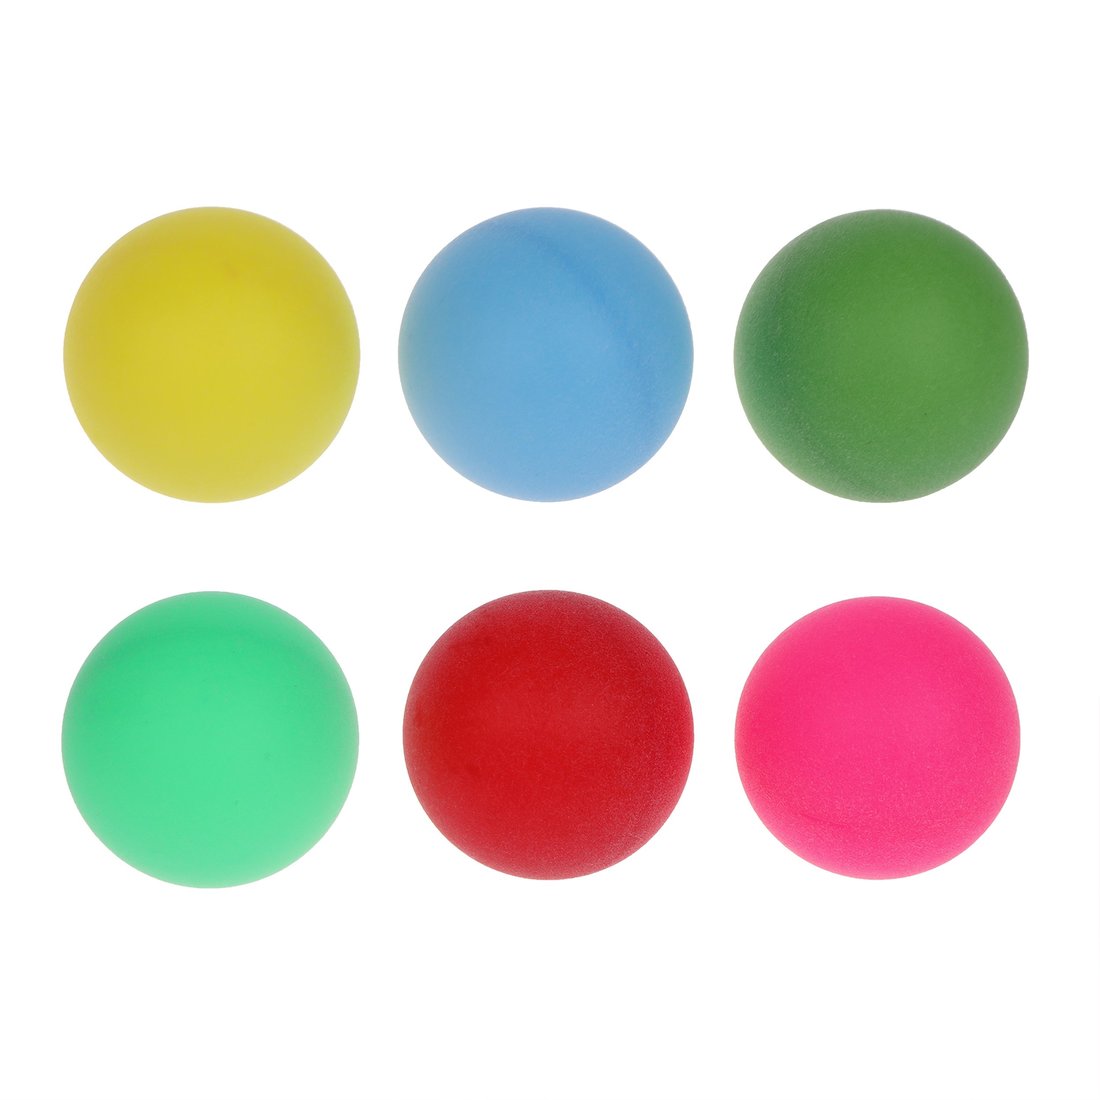 Шарики для настольного тенниса 636179 цветные в наборе 6шт в пакете